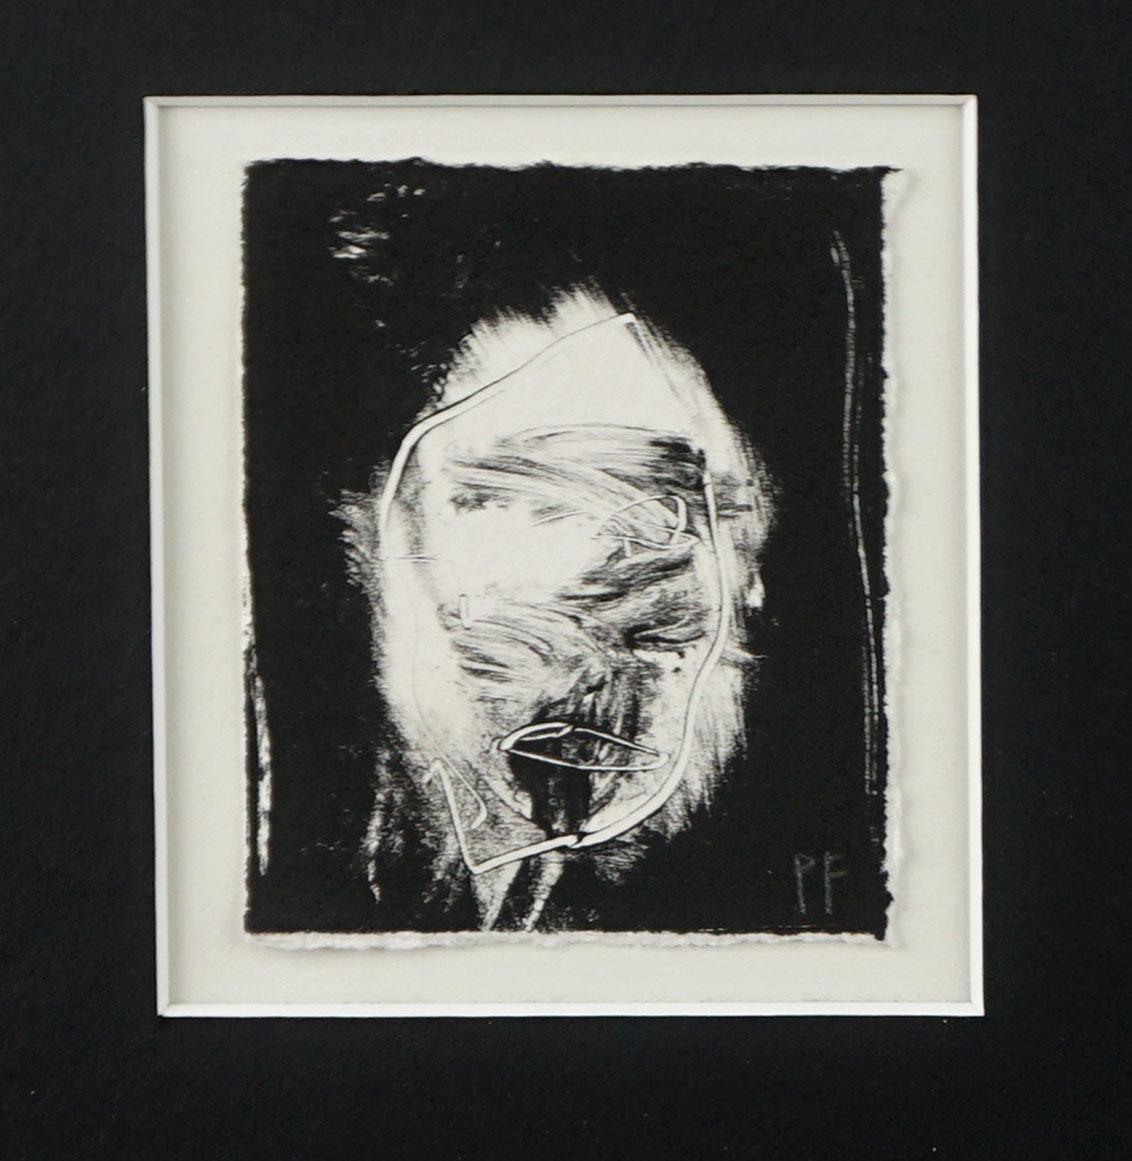 « Noir #11 », lithographie figurative abstraite contemporaine miniature en noir - Expressionnisme abstrait Print par Peter Foley